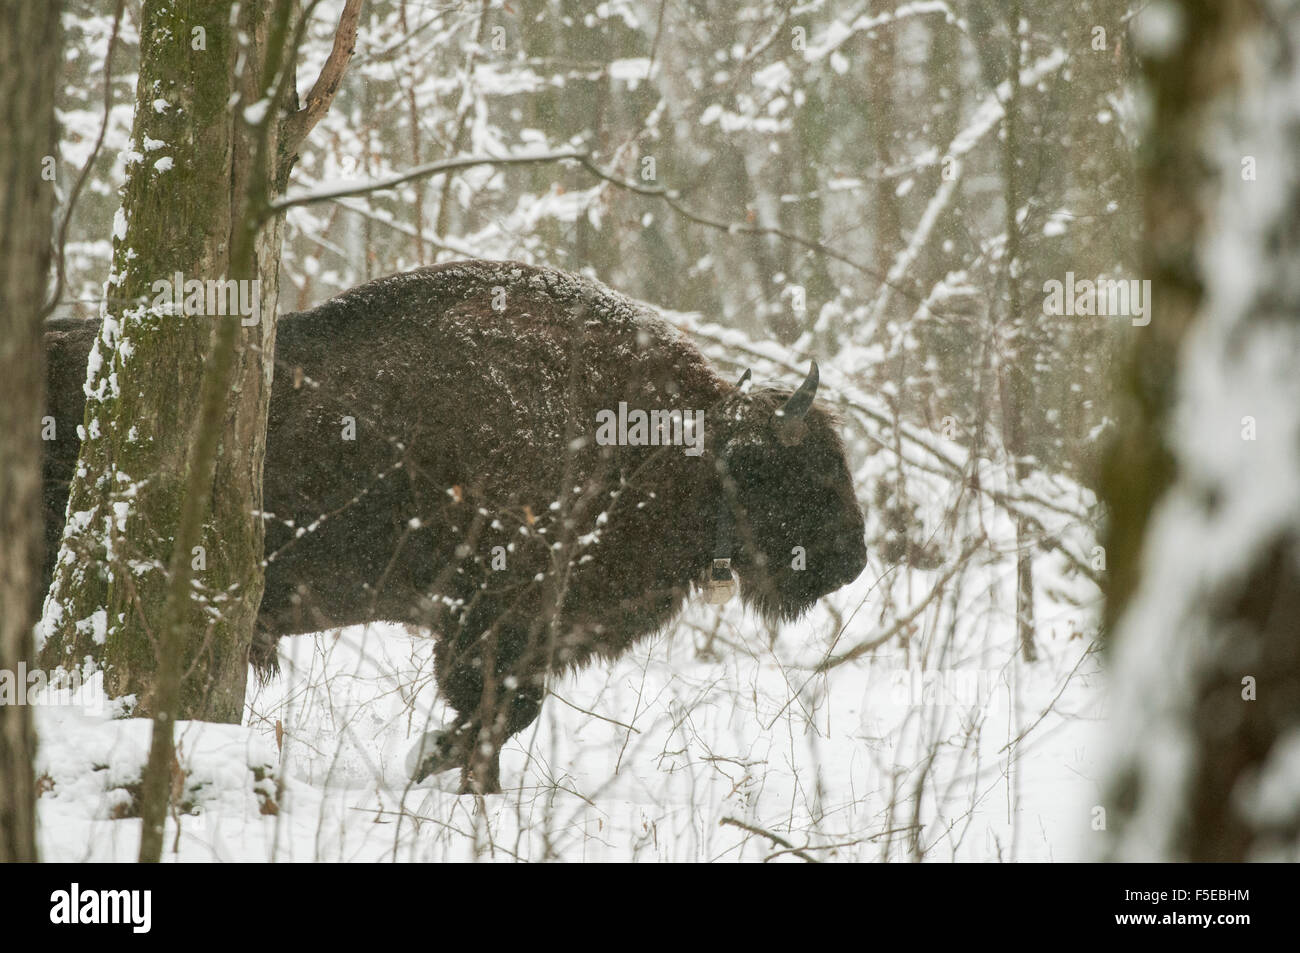 European bison (Bison bonasus) bull, Bialowieza National Park, Podlaskie Voivodeship, Poland Stock Photo